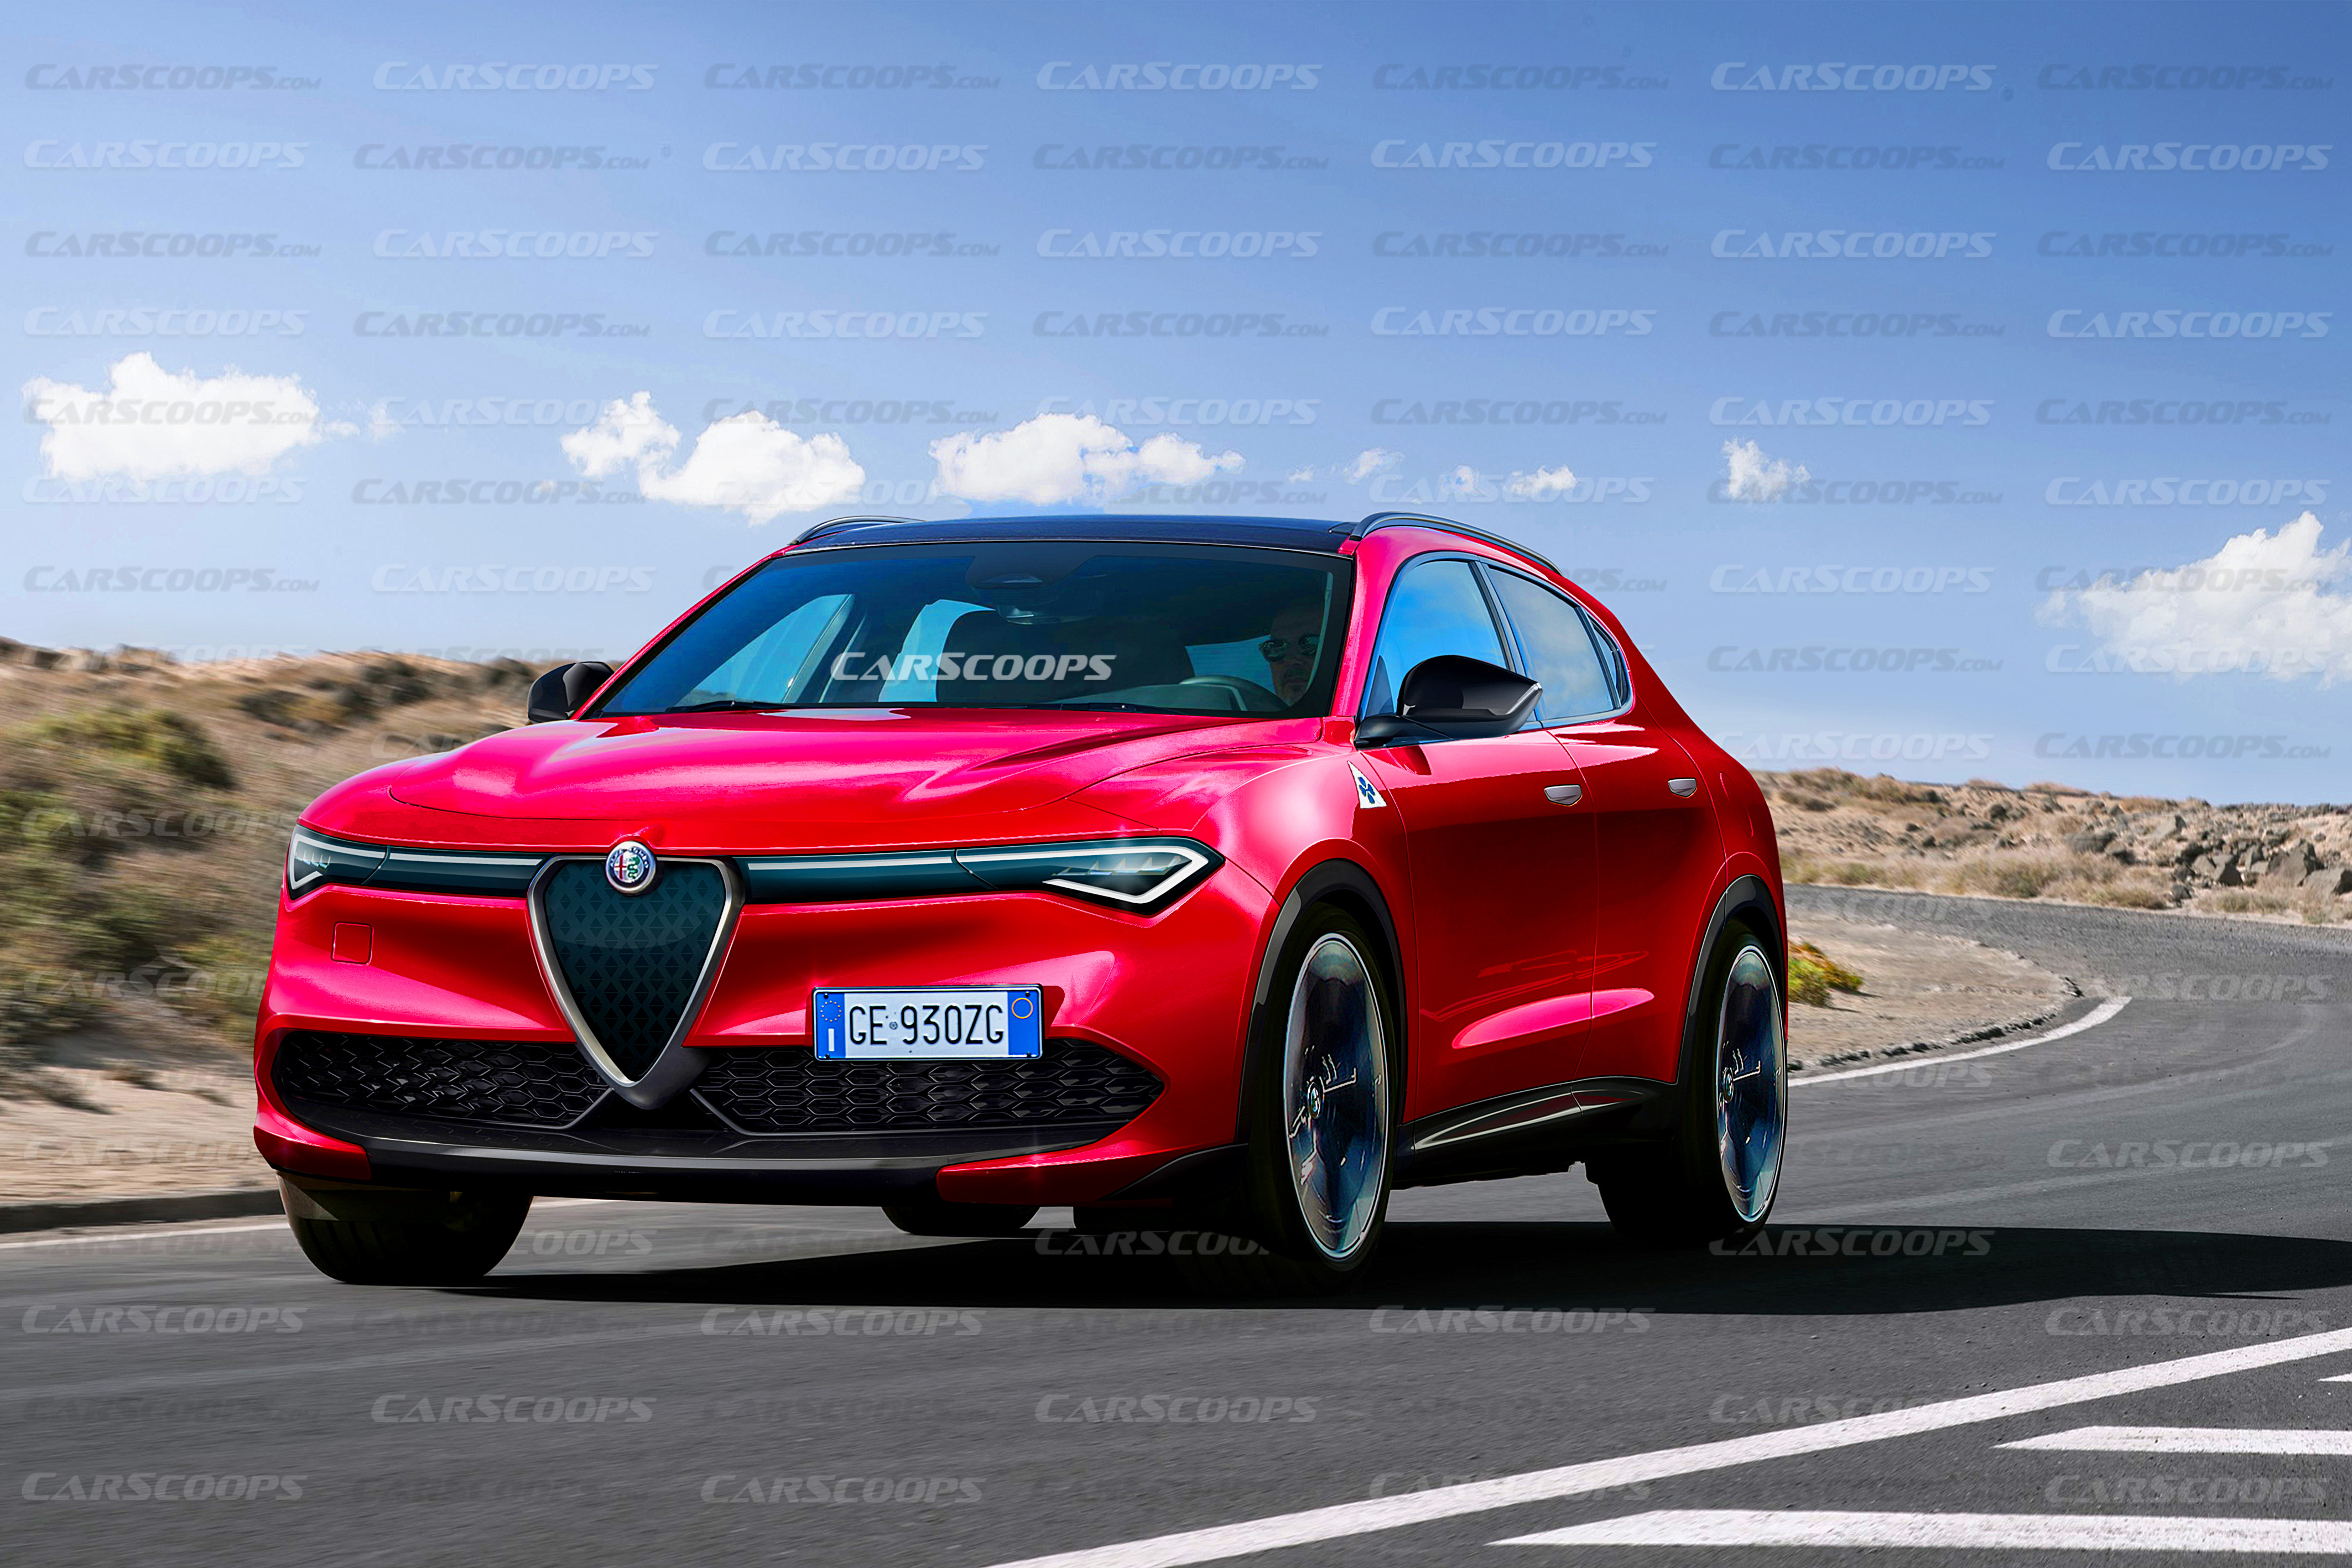 Alfa Romeo Giulietta will be axed in 2020